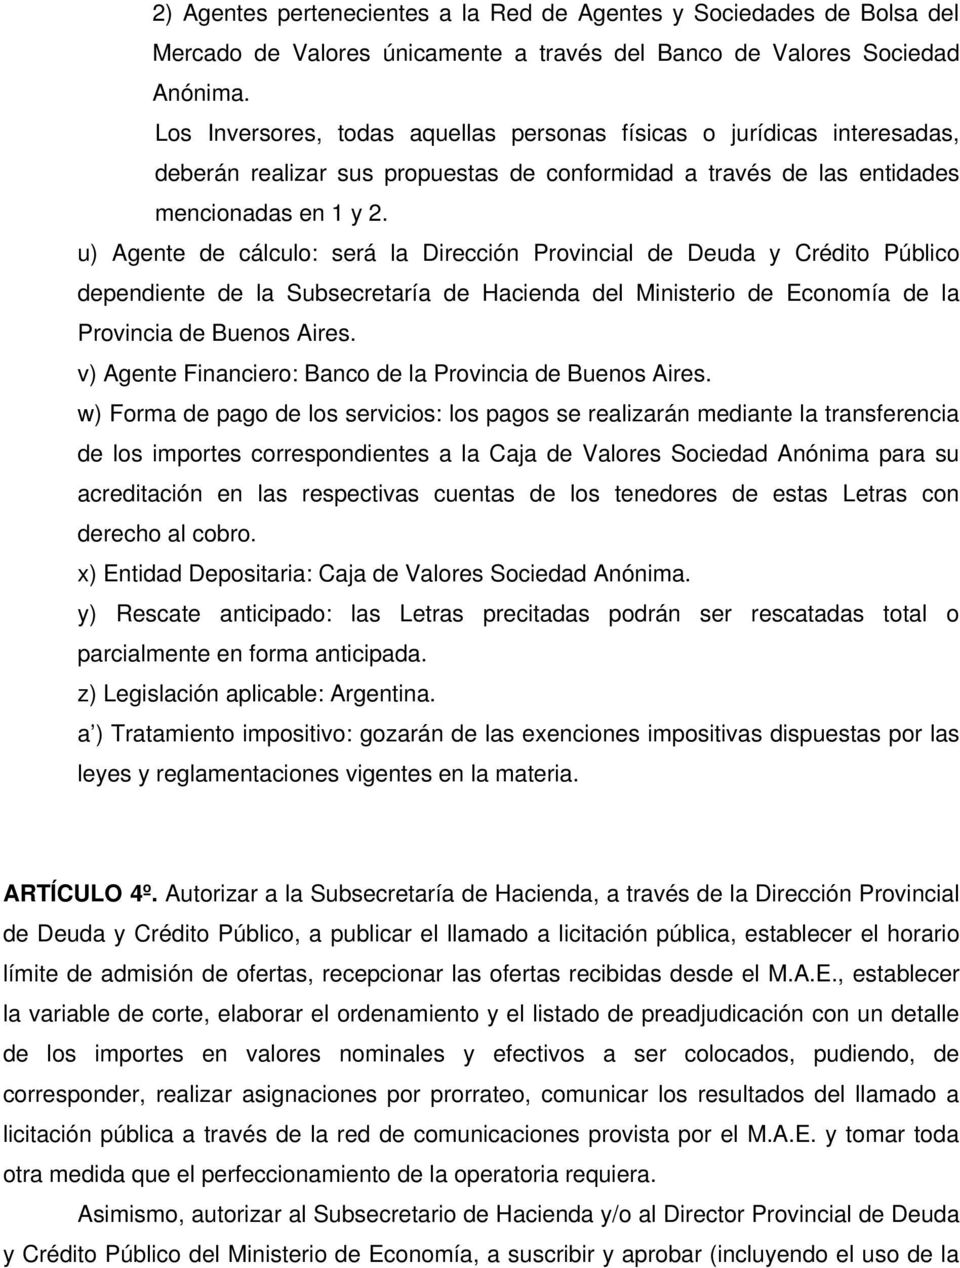 u) Agente de cálculo: será la Dirección Provincial de Deuda y Crédito Público dependiente de la Subsecretaría de Hacienda del Ministerio de Economía de la Provincia de Buenos Aires.